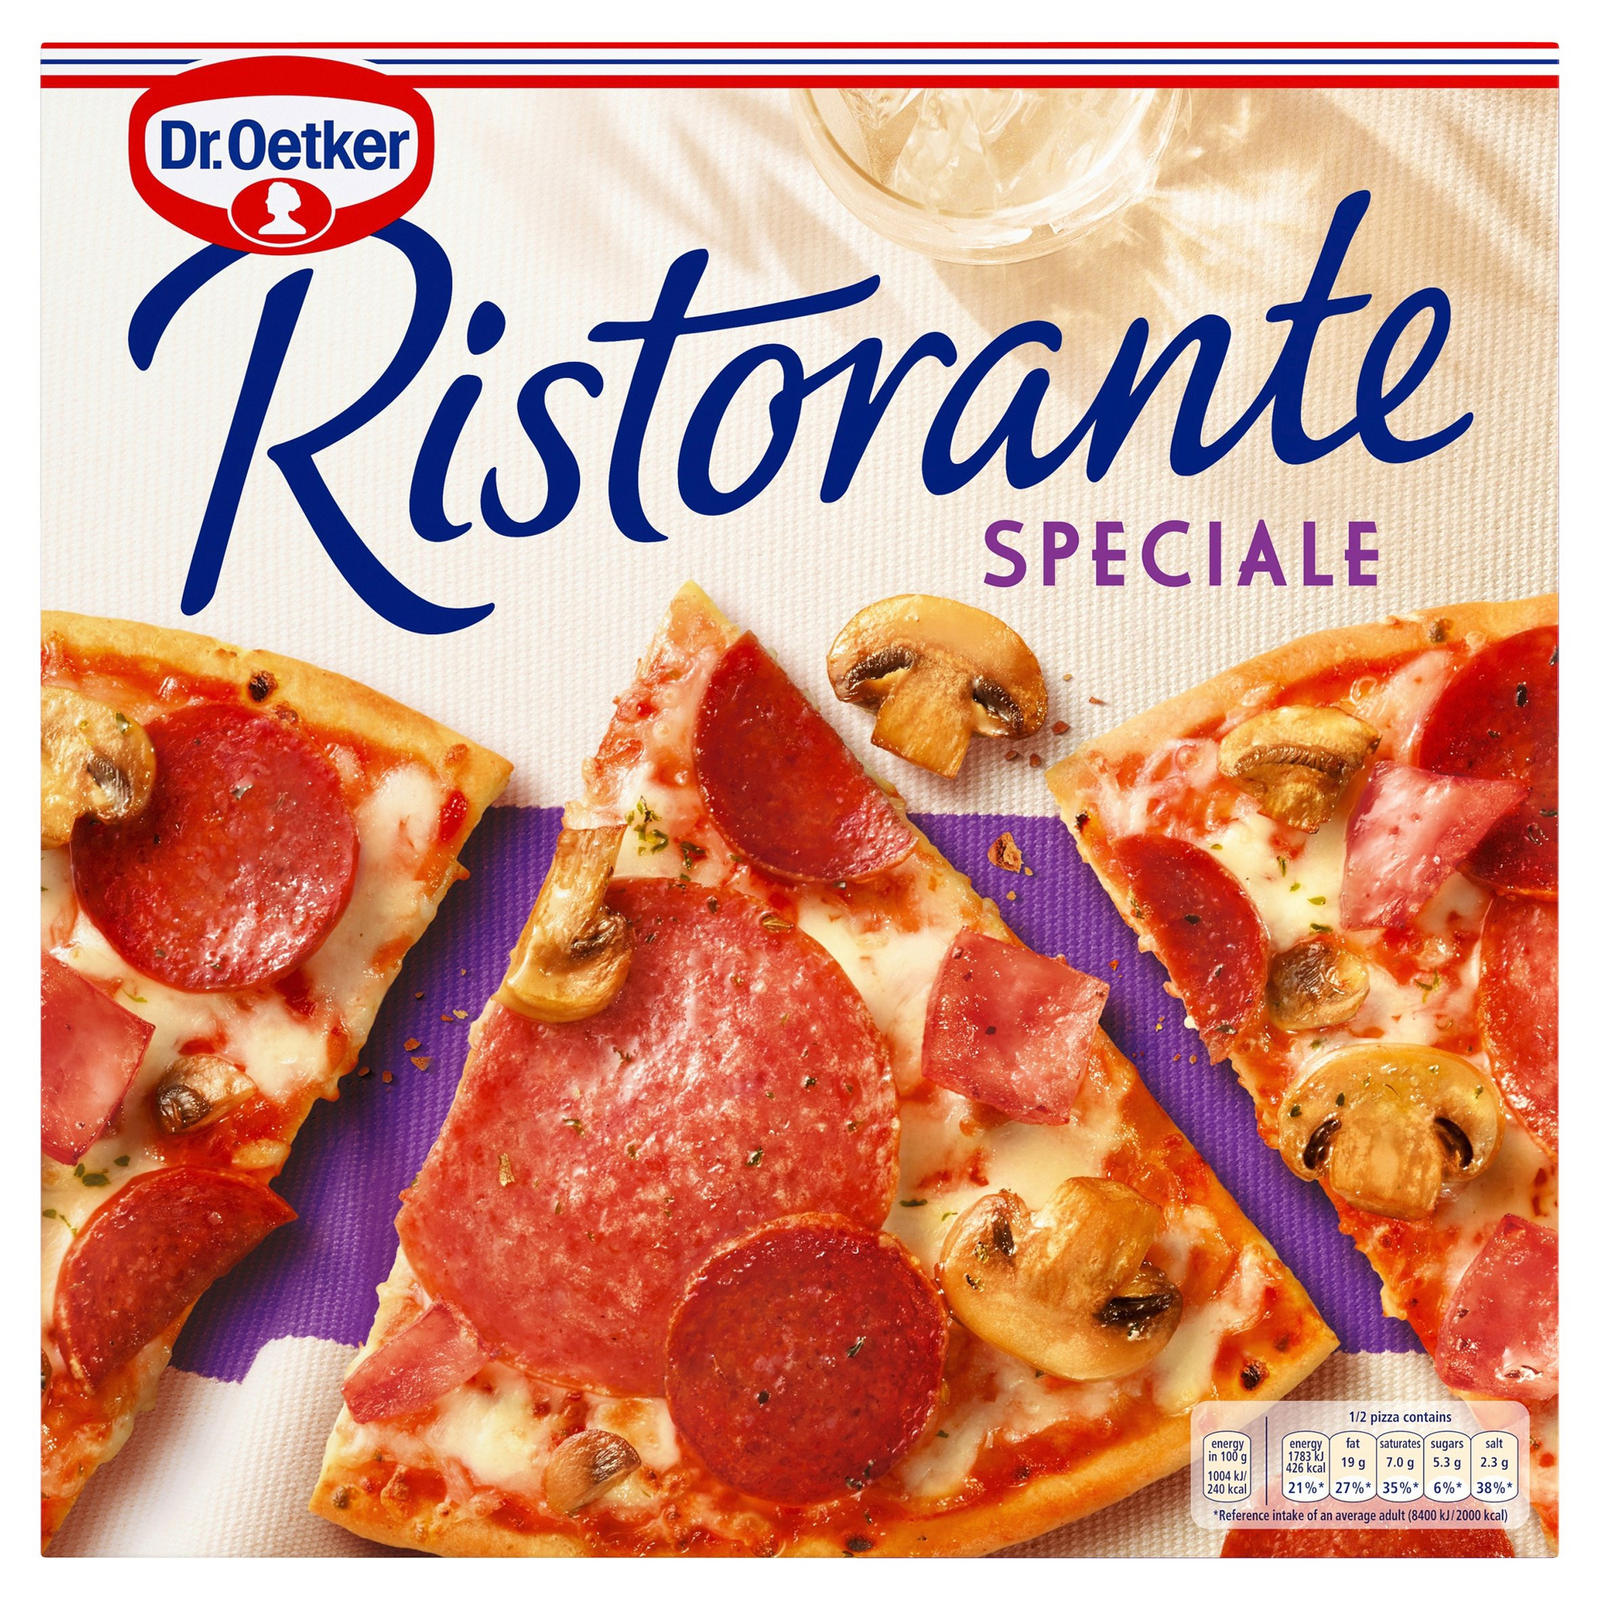 Dr. Oetker Ristorante Speciale Pizza 330g | Thin & Crispy Pizza